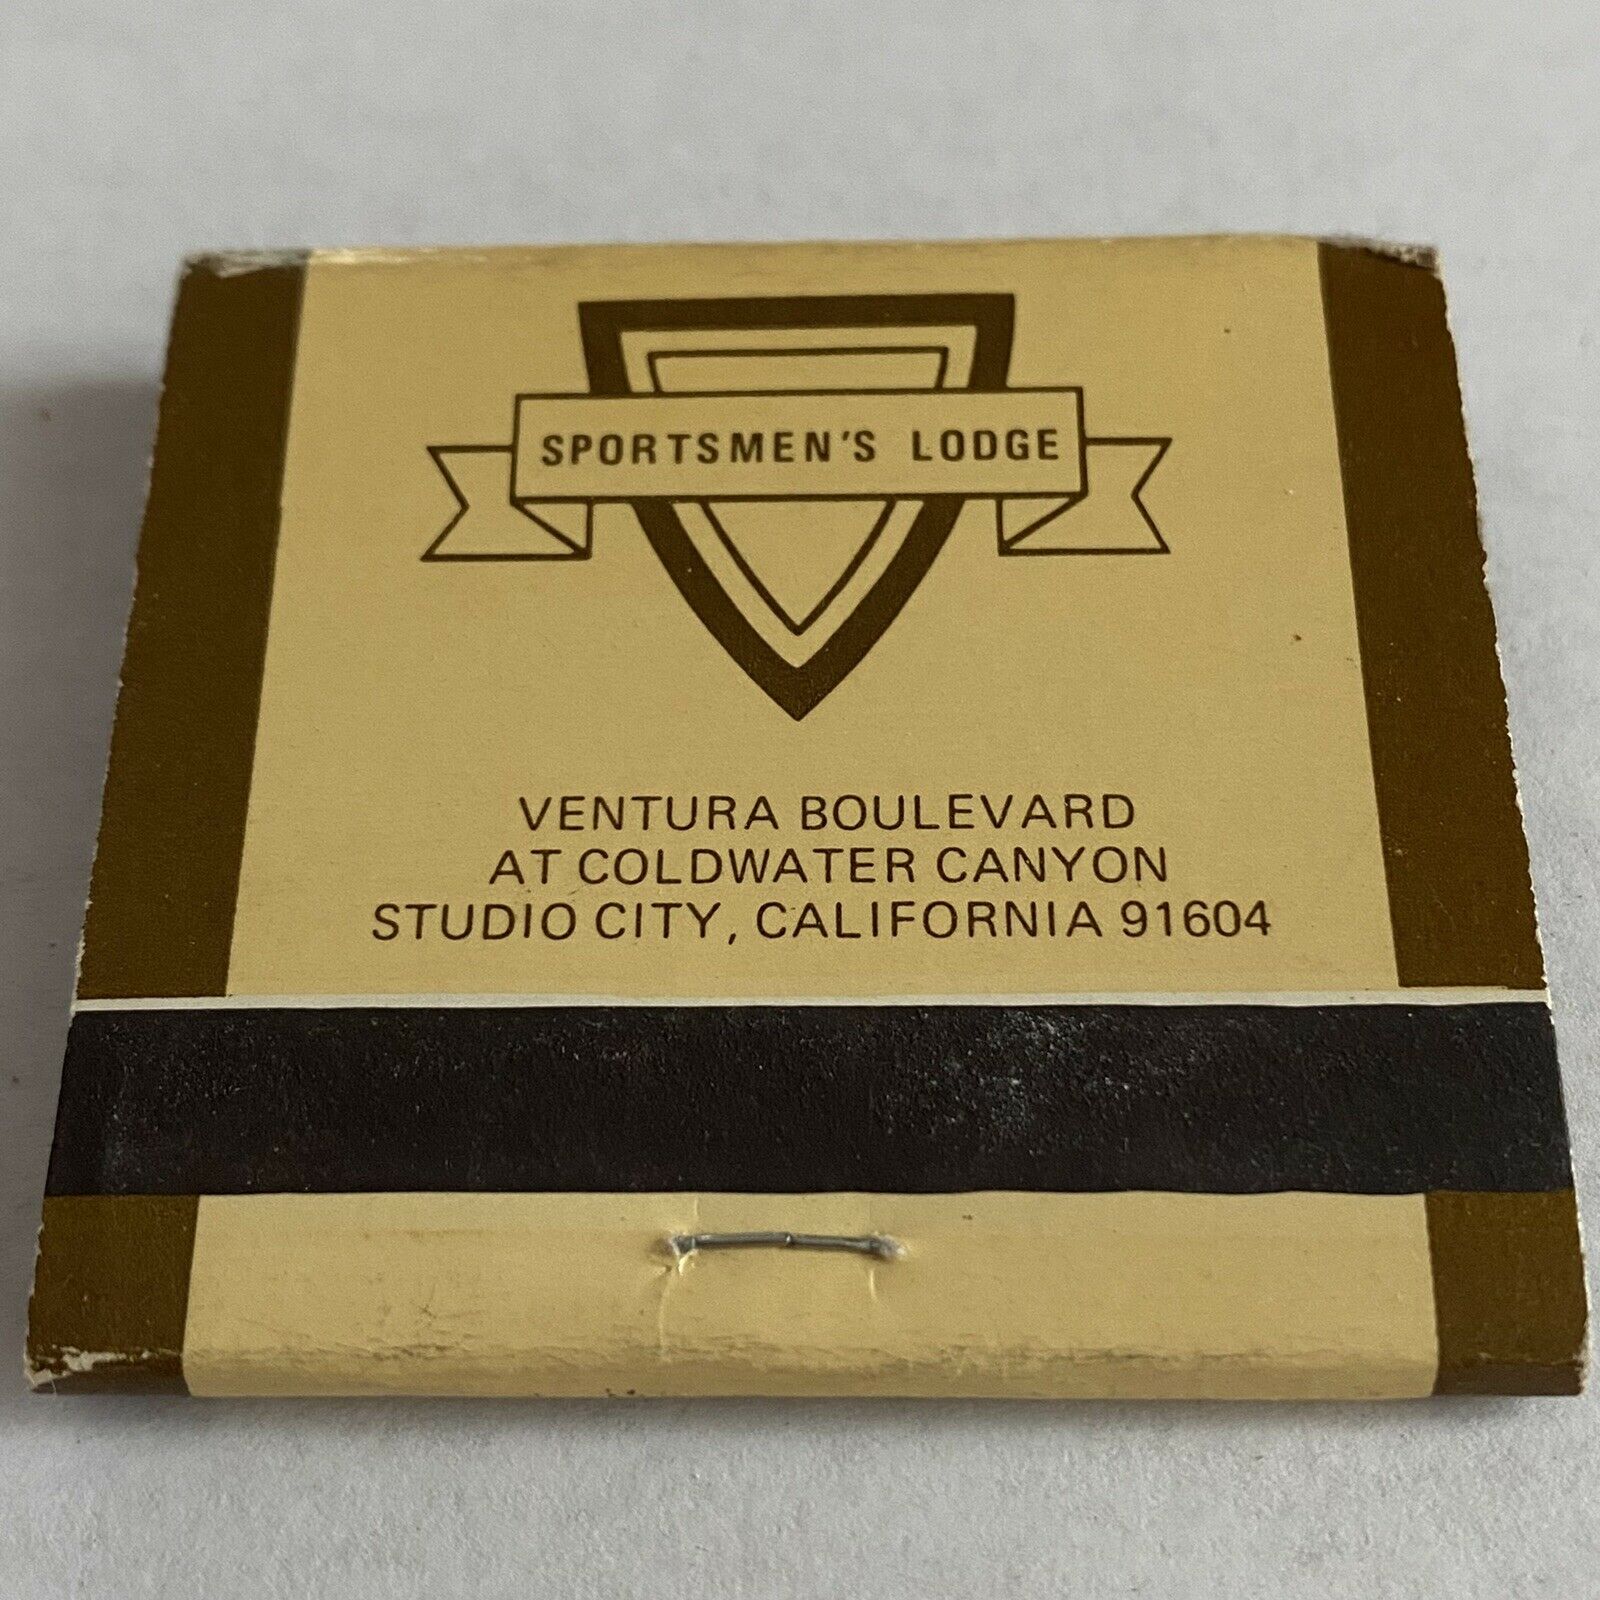 Vintage Full Matchbook - Sportsmen’s Lodge - Studio City, California